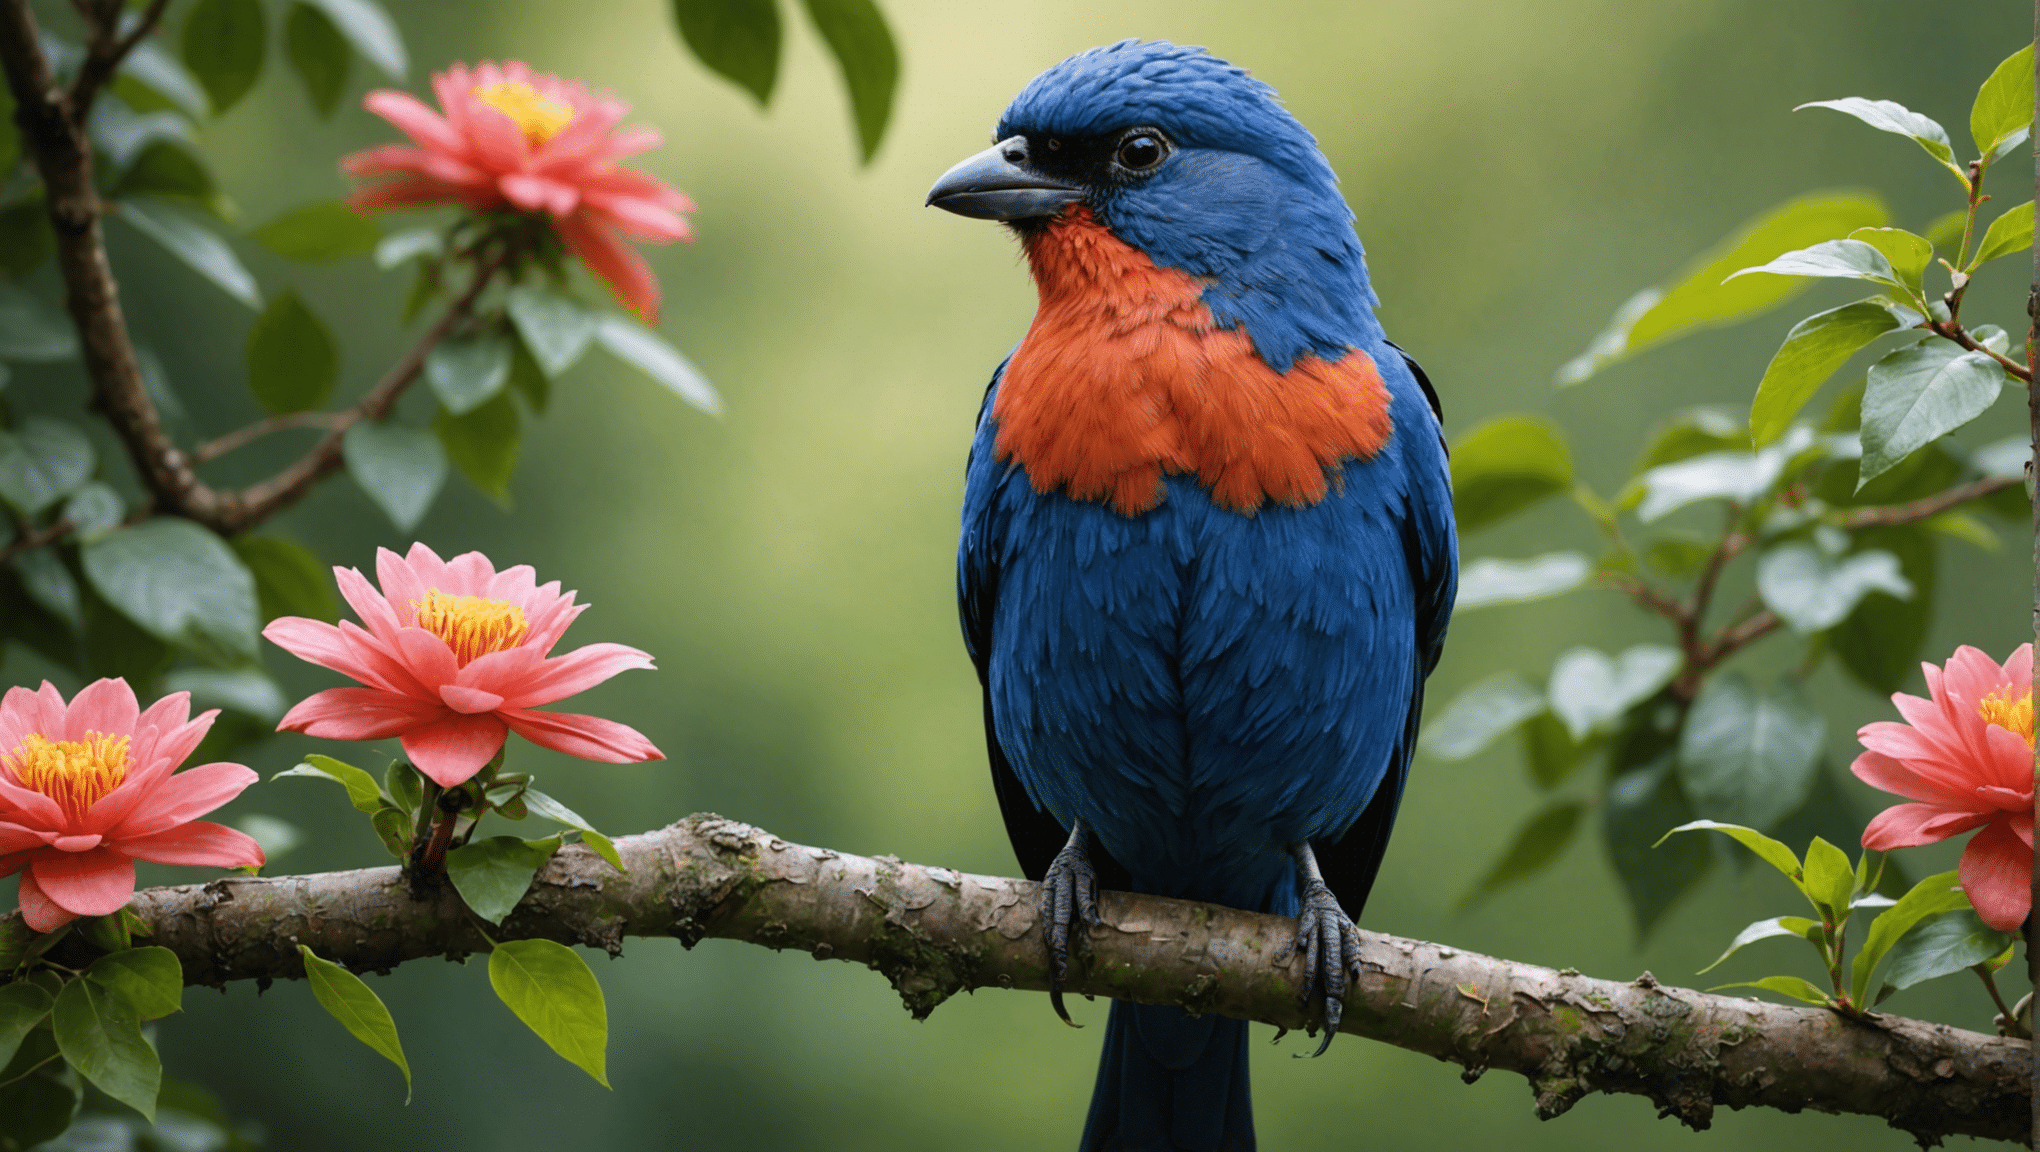 är fula fåglar verkligen vackra? ta reda på detta i denna fascinerande utforskning av naturens dolda skönhet och den överraskande sanningen bakom skönheten hos till synes fula fåglar.